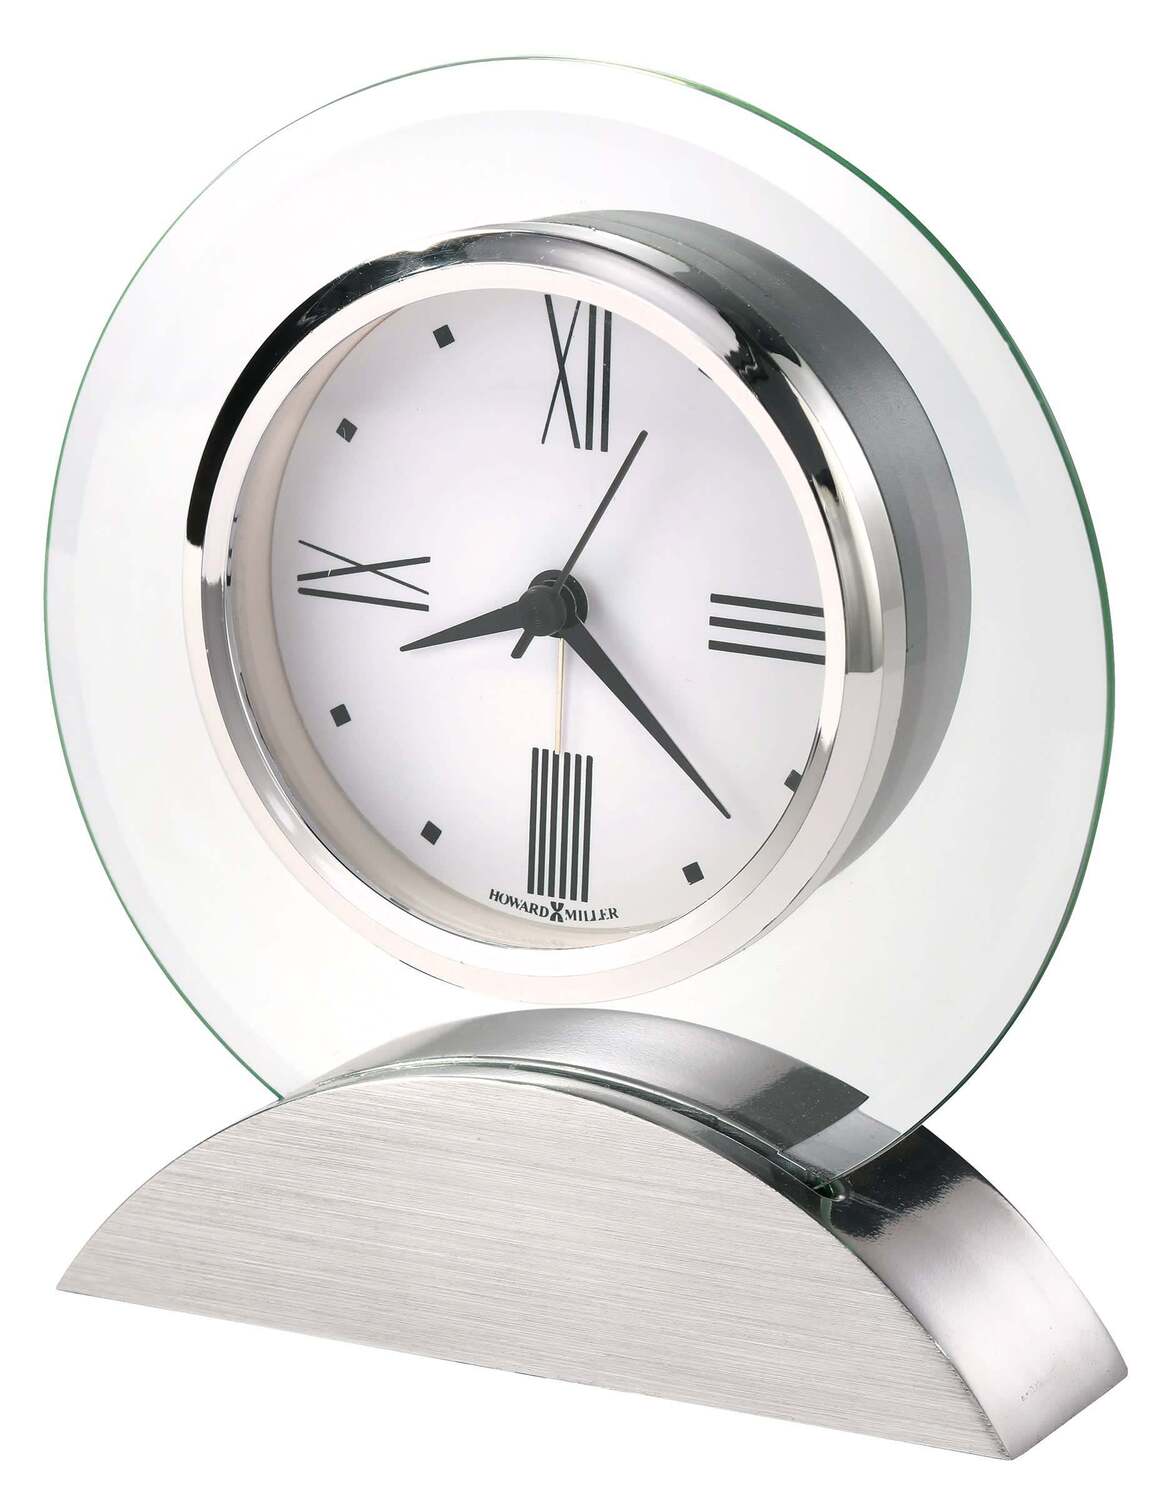 Howard Miller Brayden Alarm Clock, HOWARD MILLER,  - POSHHAUS